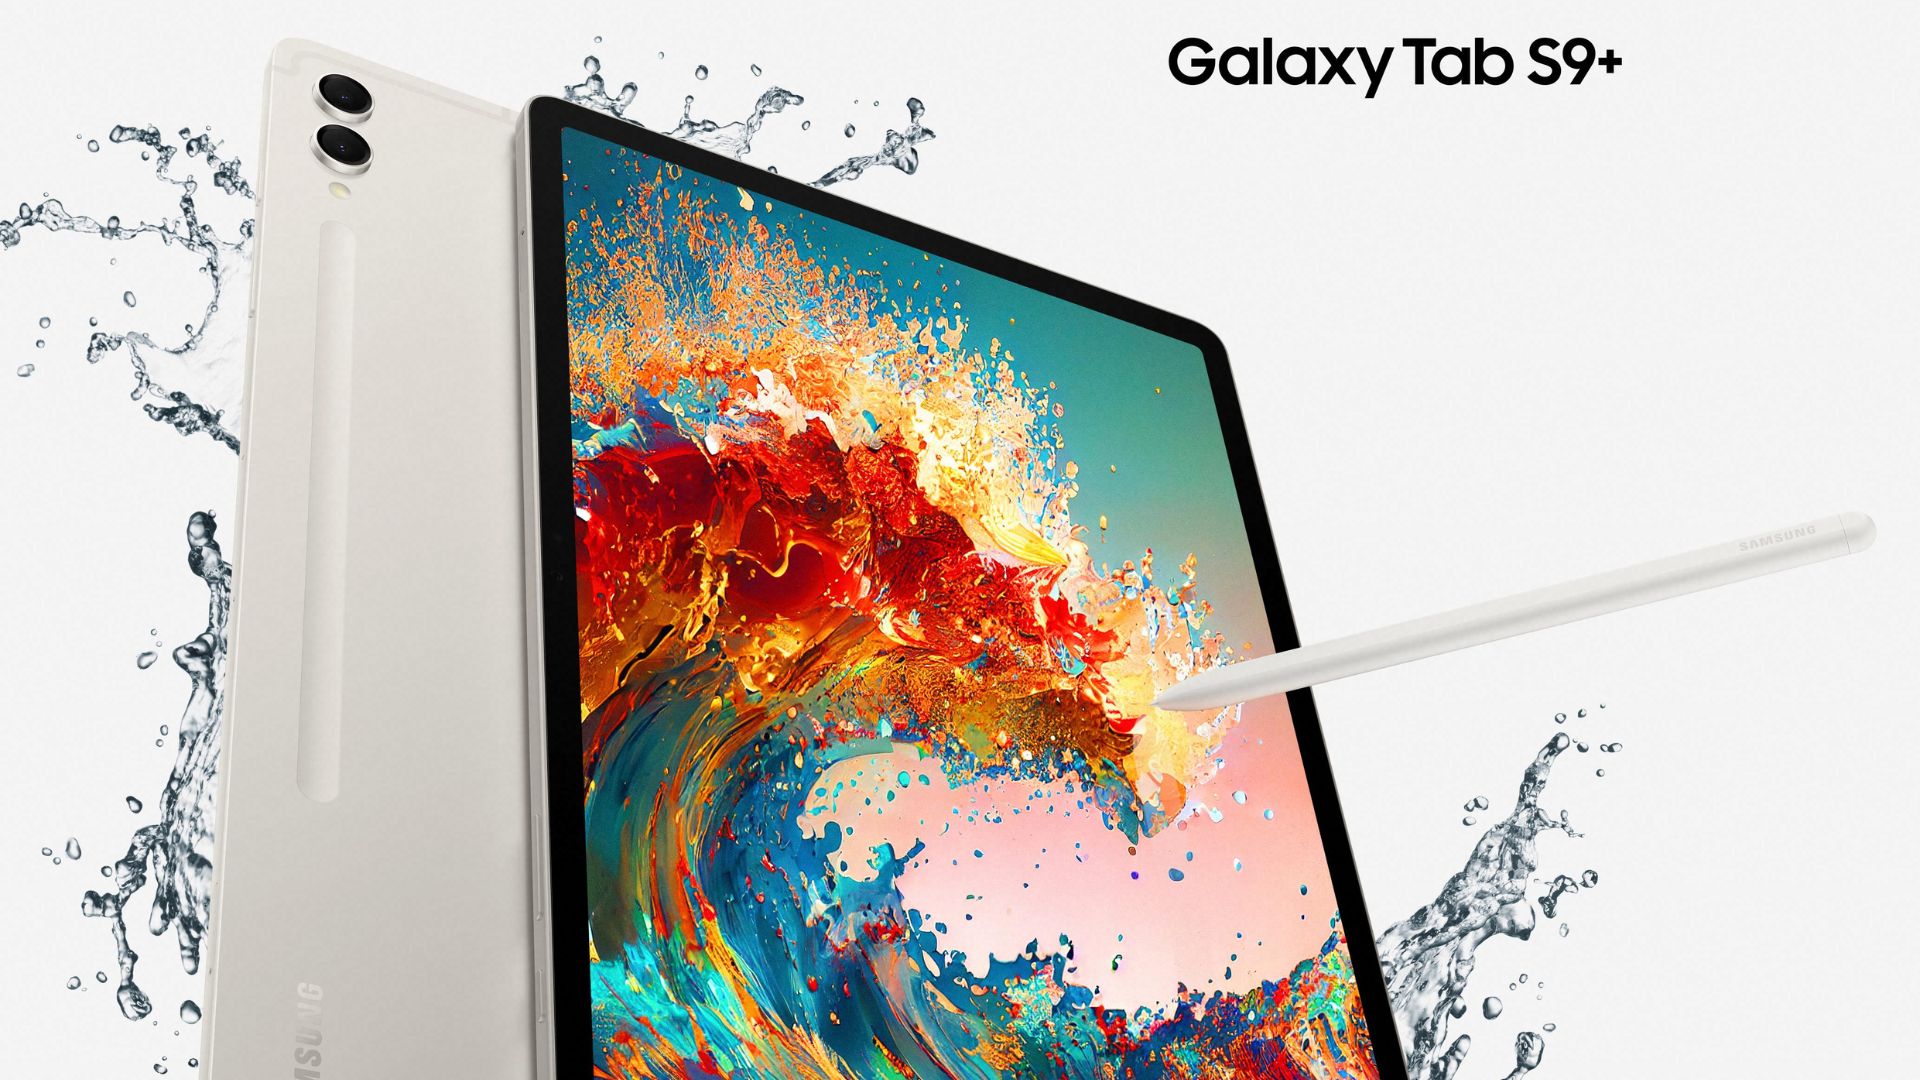 La tableta Samsung Galaxy Tab S9 Ultra se destaca por su diseño refinado, la nitidez de su pantalla y su nueva certificación que la hace resistente al polvo y al agua